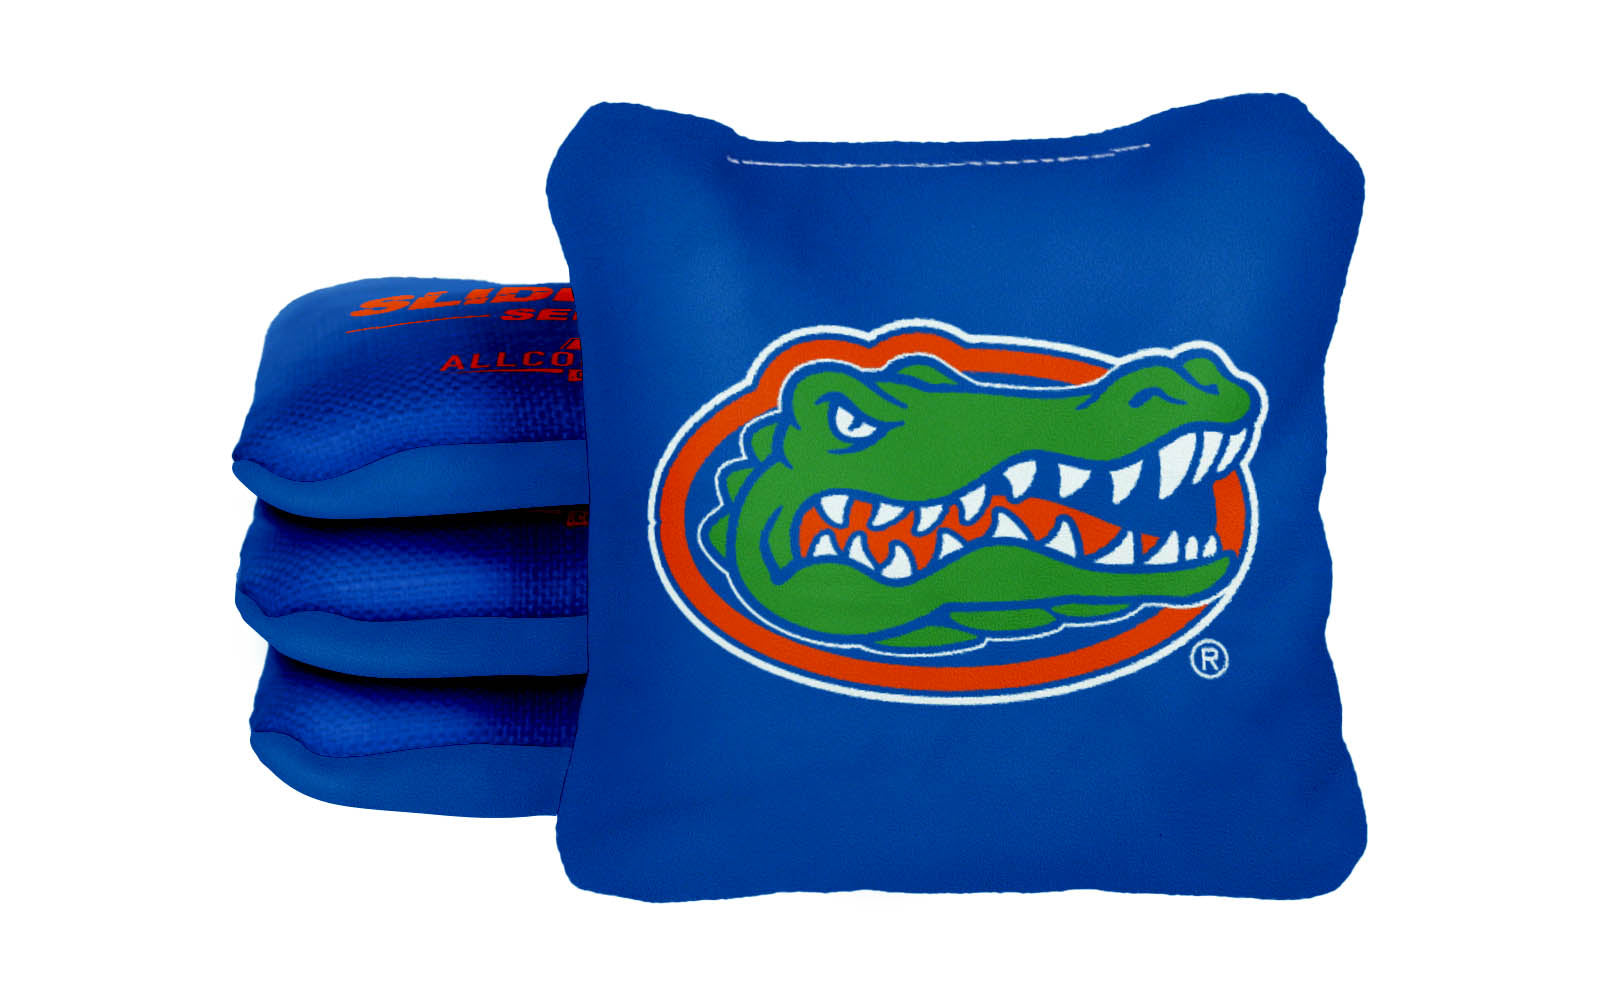 Officially Licensed Collegiate Cornhole Bags - AllCornhole Slide Rite - Set of 4 - University of Florida